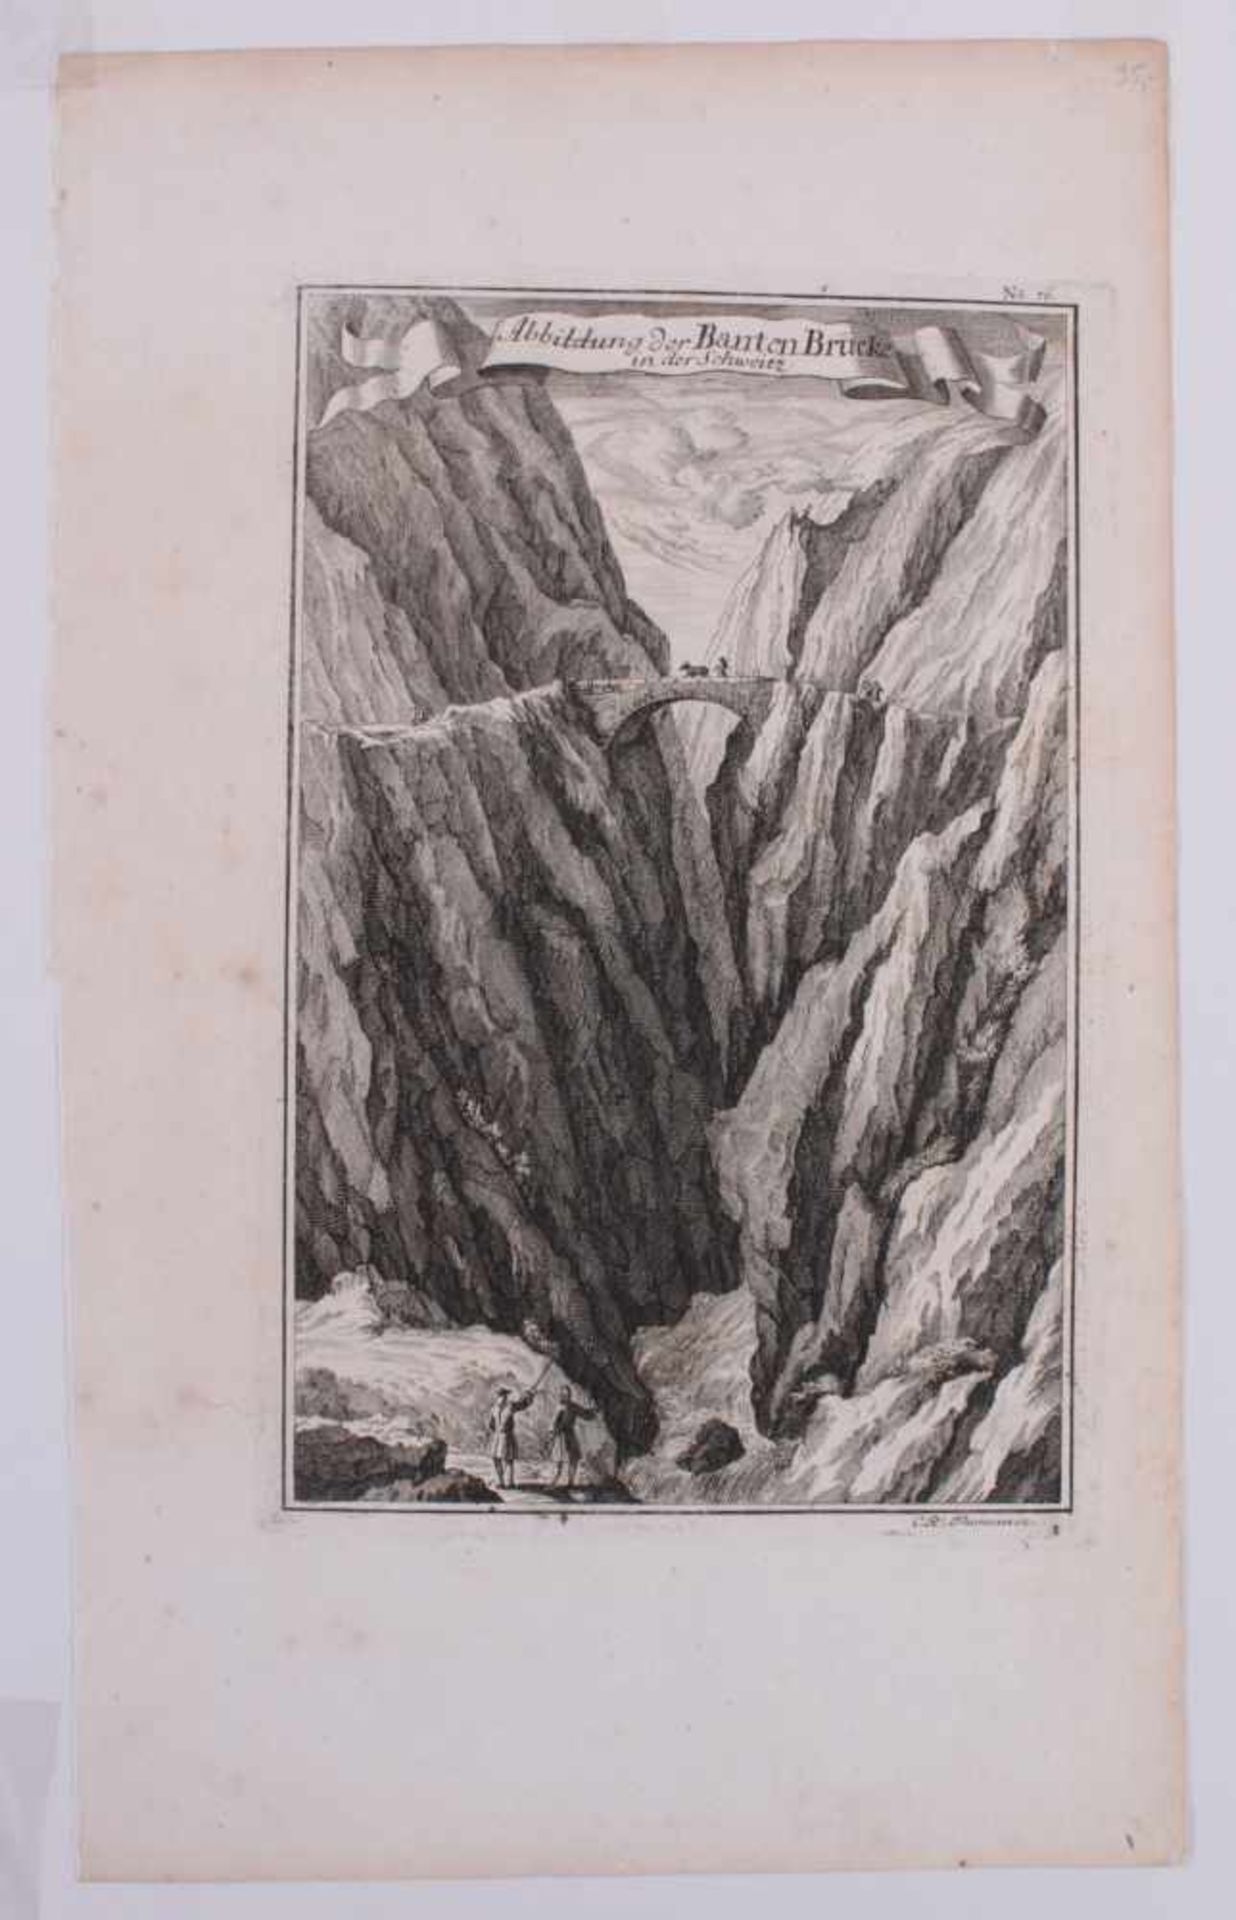 "Brücken" 2 Kupferstiche„Abbildung der Banken Brücke in der Schweiz-Linthal„ von C.R. Thoman aus C. - Bild 2 aus 5